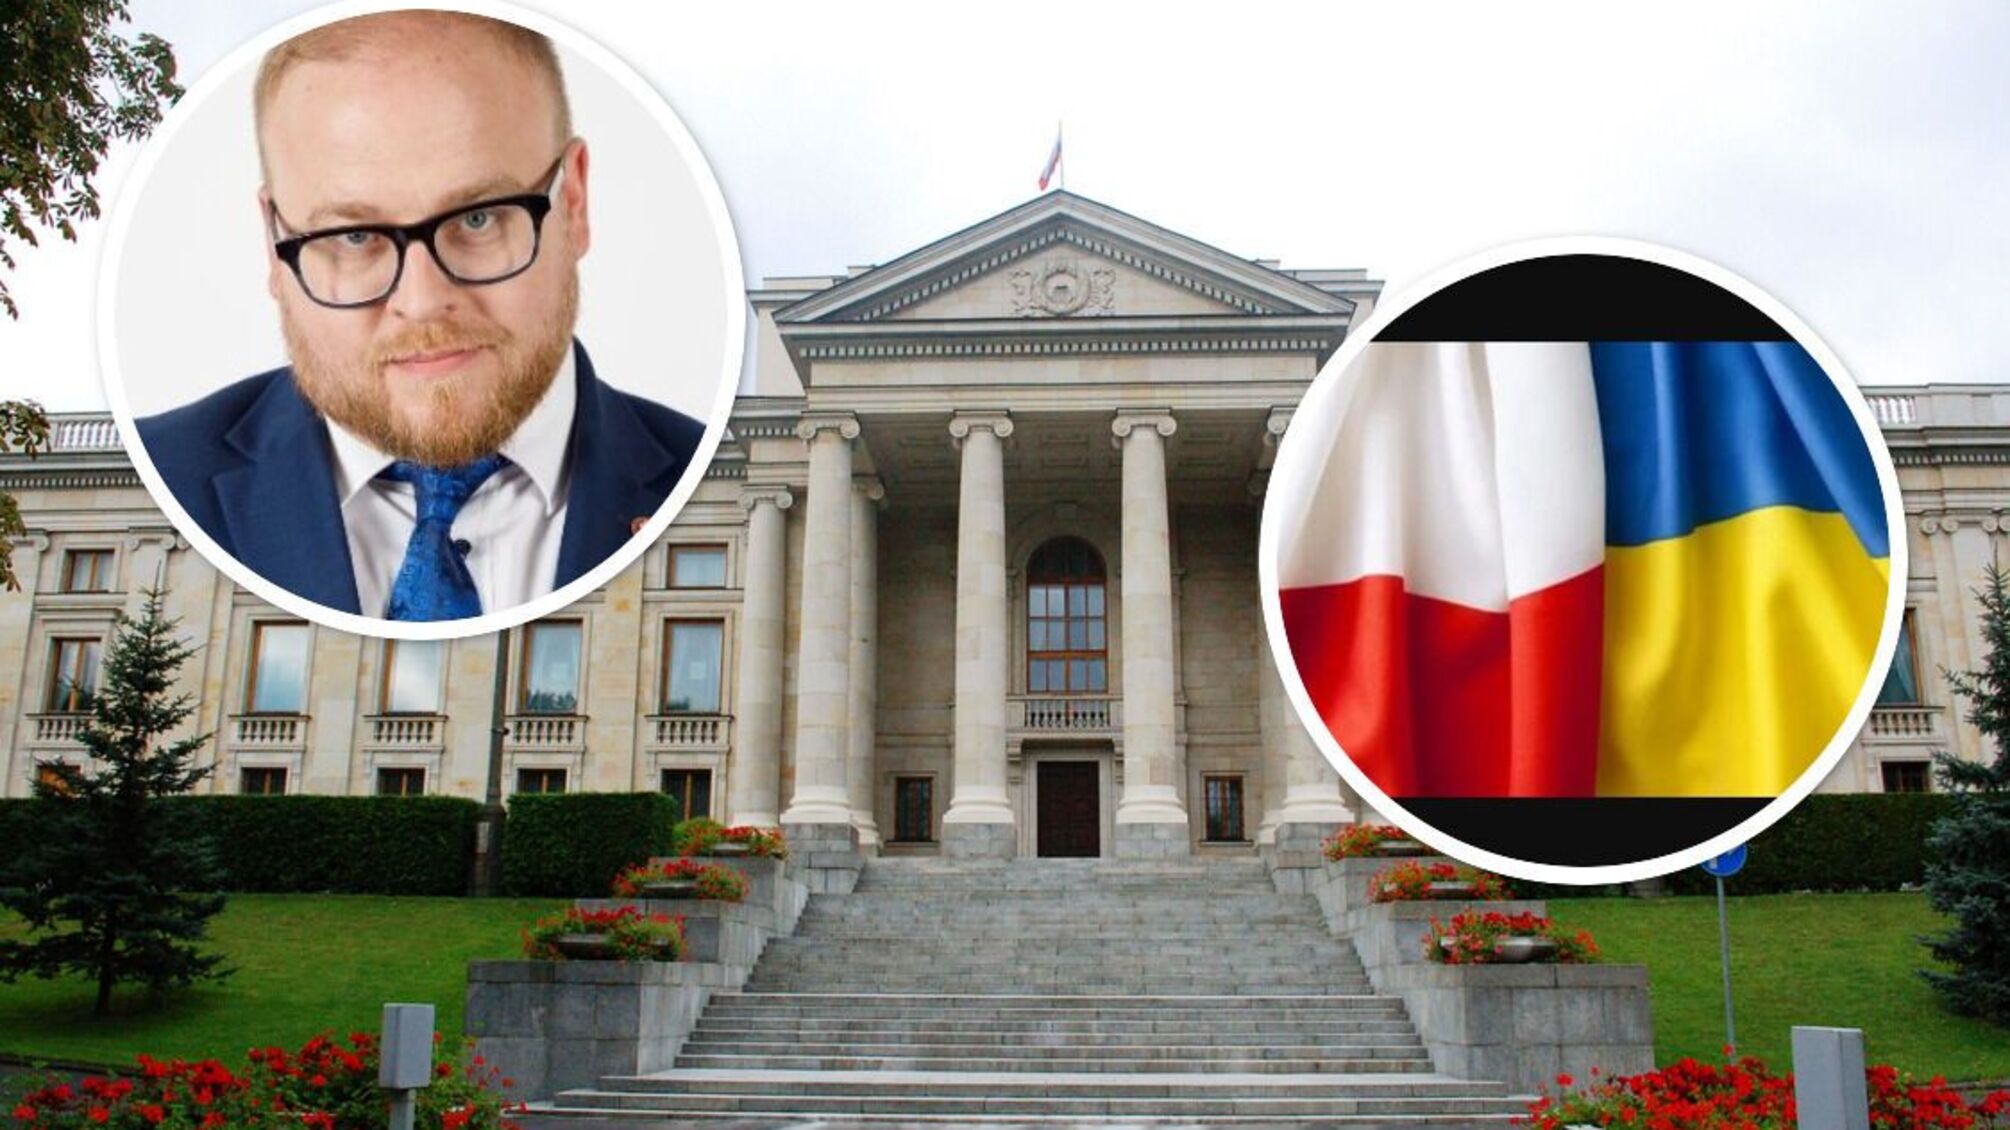 Посольство рф в Польше – это архитектурный комплекс, расположенный в центре Варшавы и похожий на дворец времен Российской империи